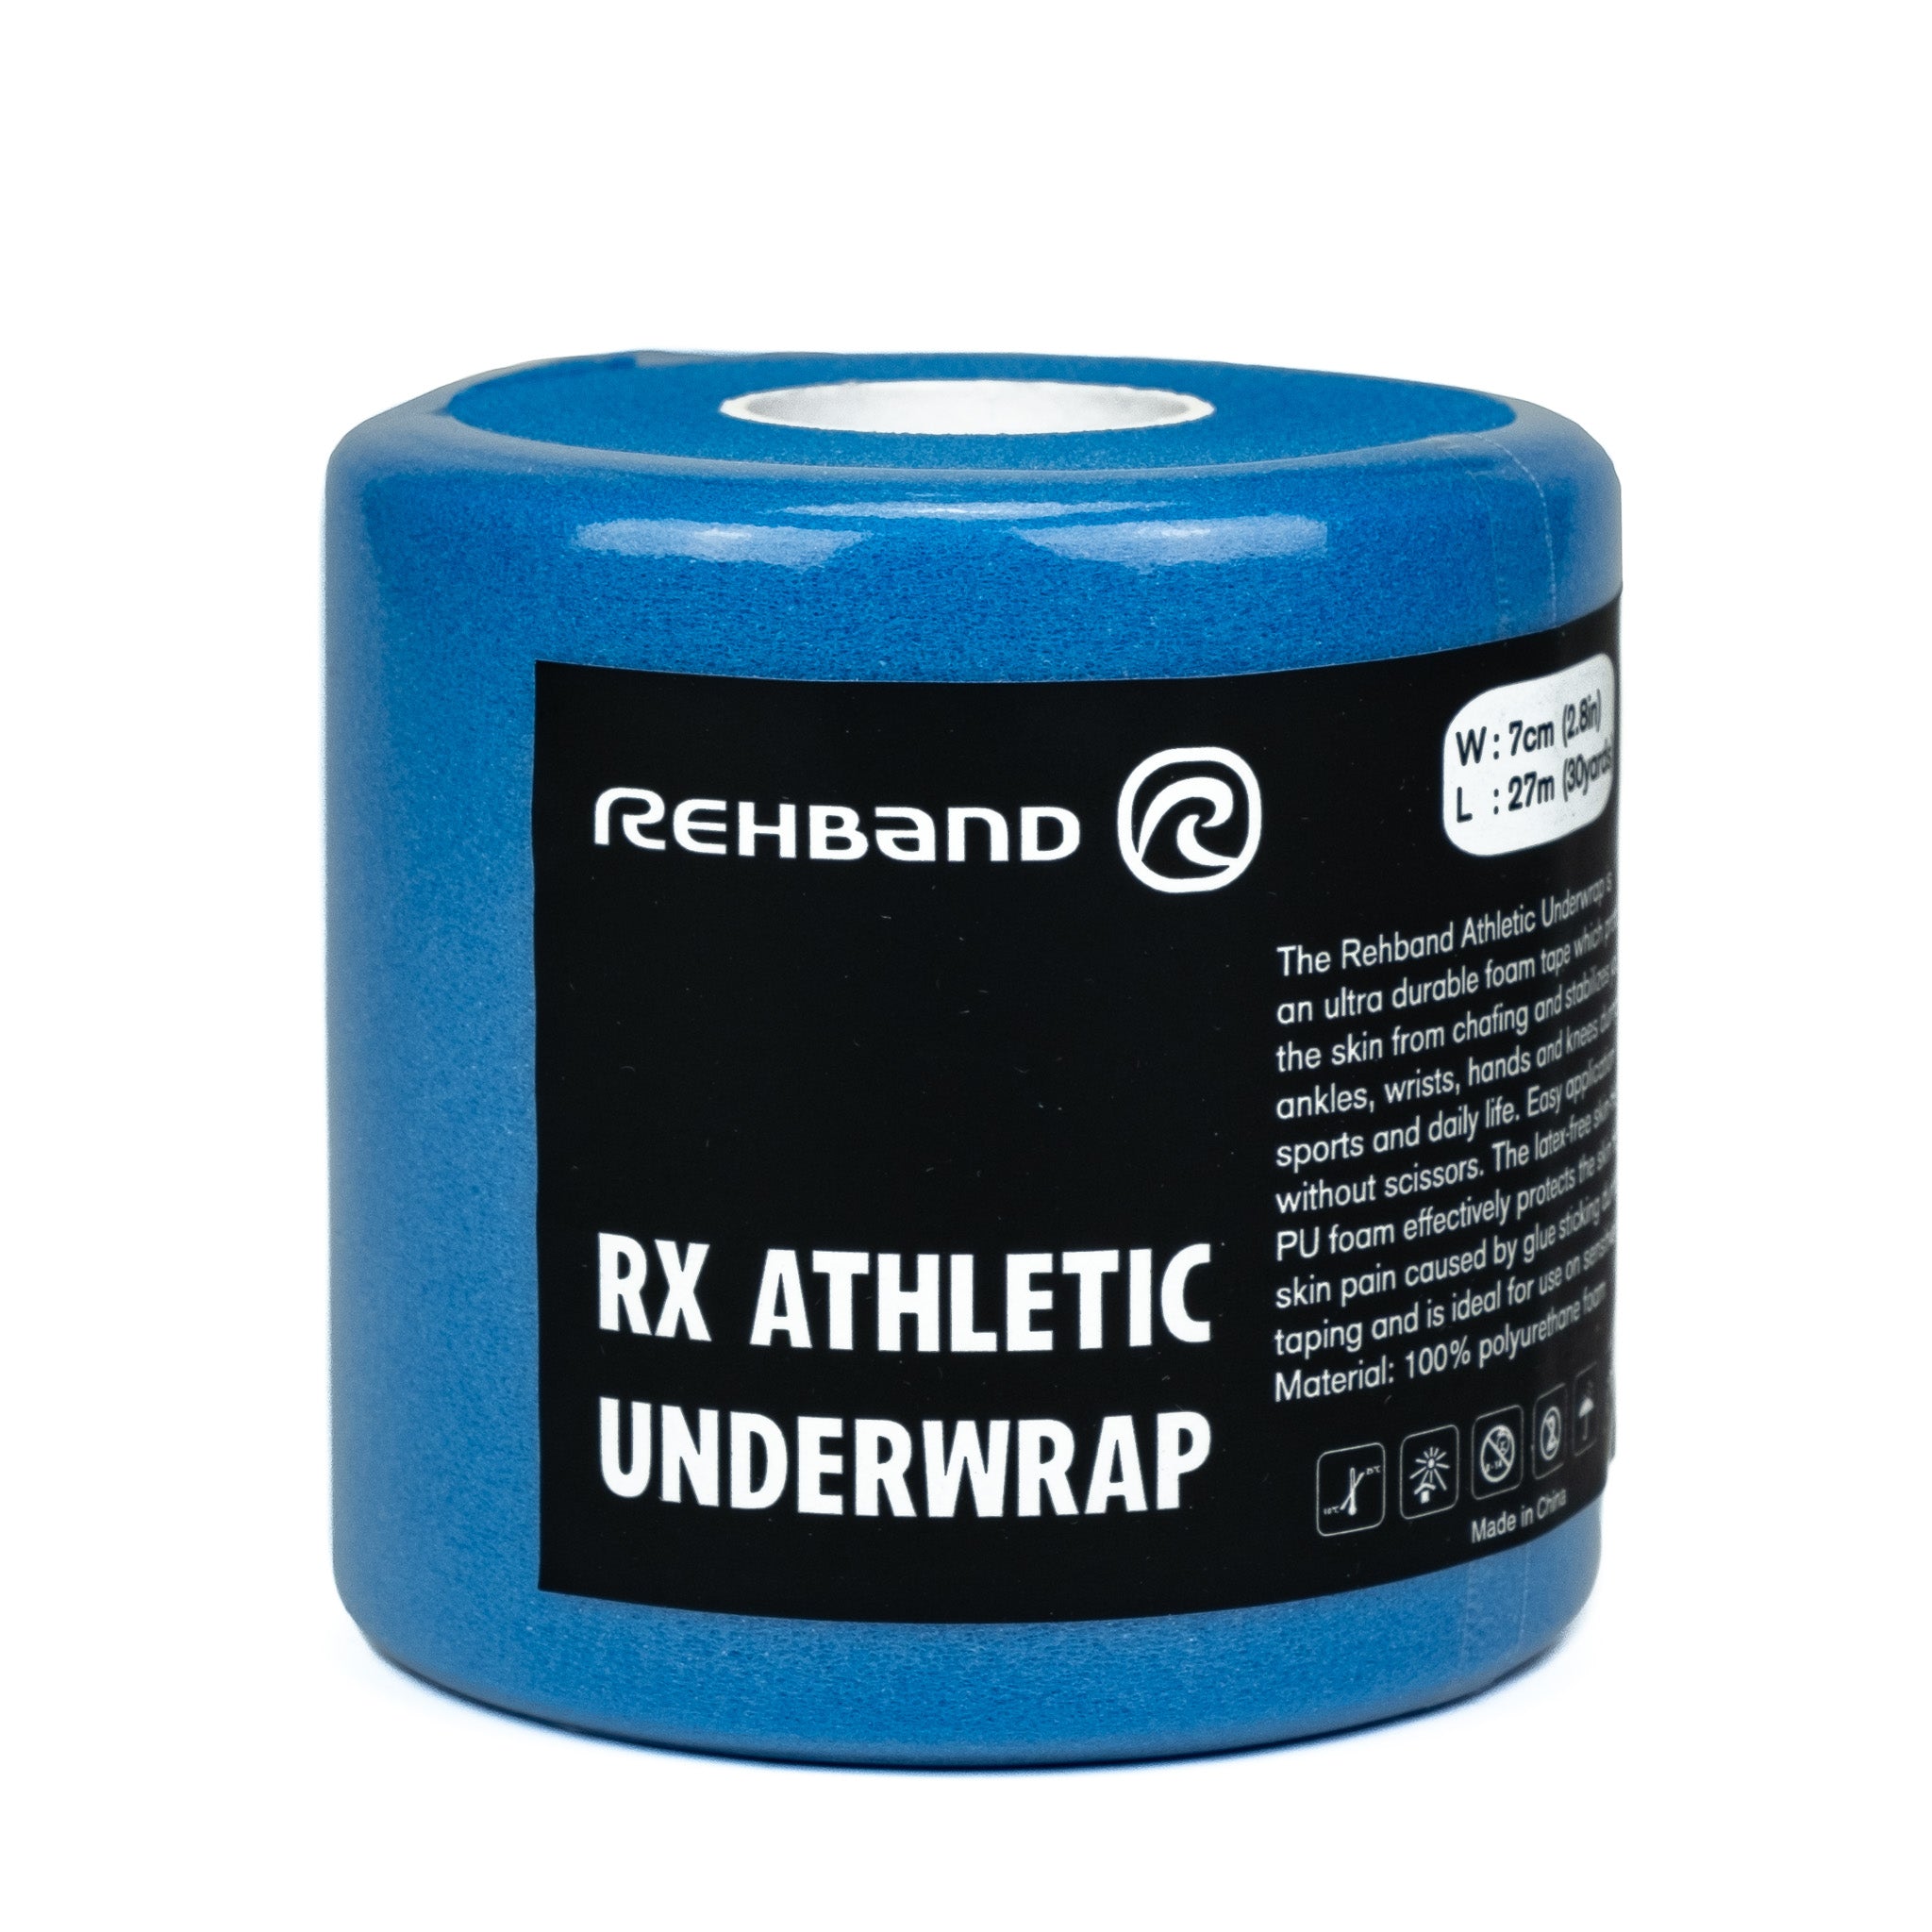 A roll of light blue underwrap tape